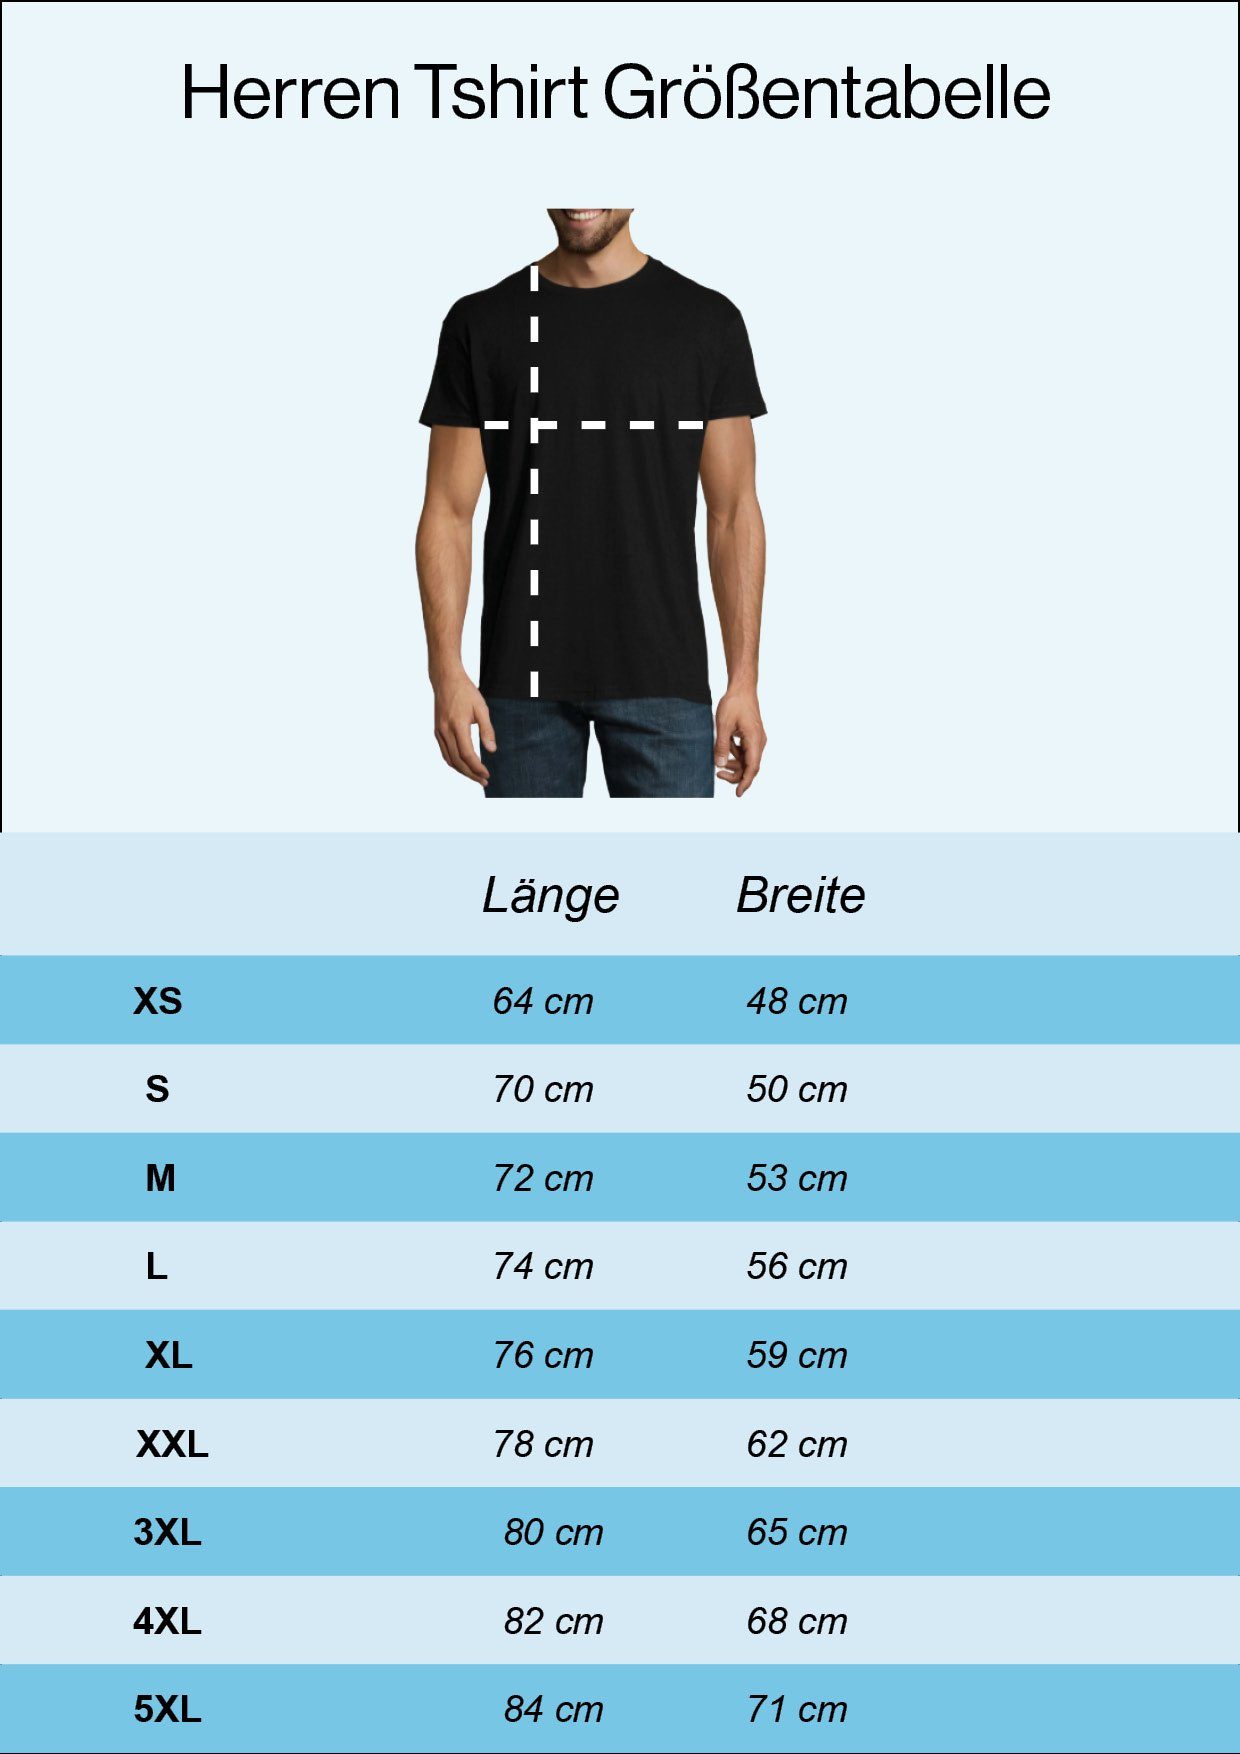 Youth Designz T-Shirt Schwarz Shirt PAIN QUITTING Frontdruck IS Trendigem IS FOREVER! Herren mit TEMPORARY